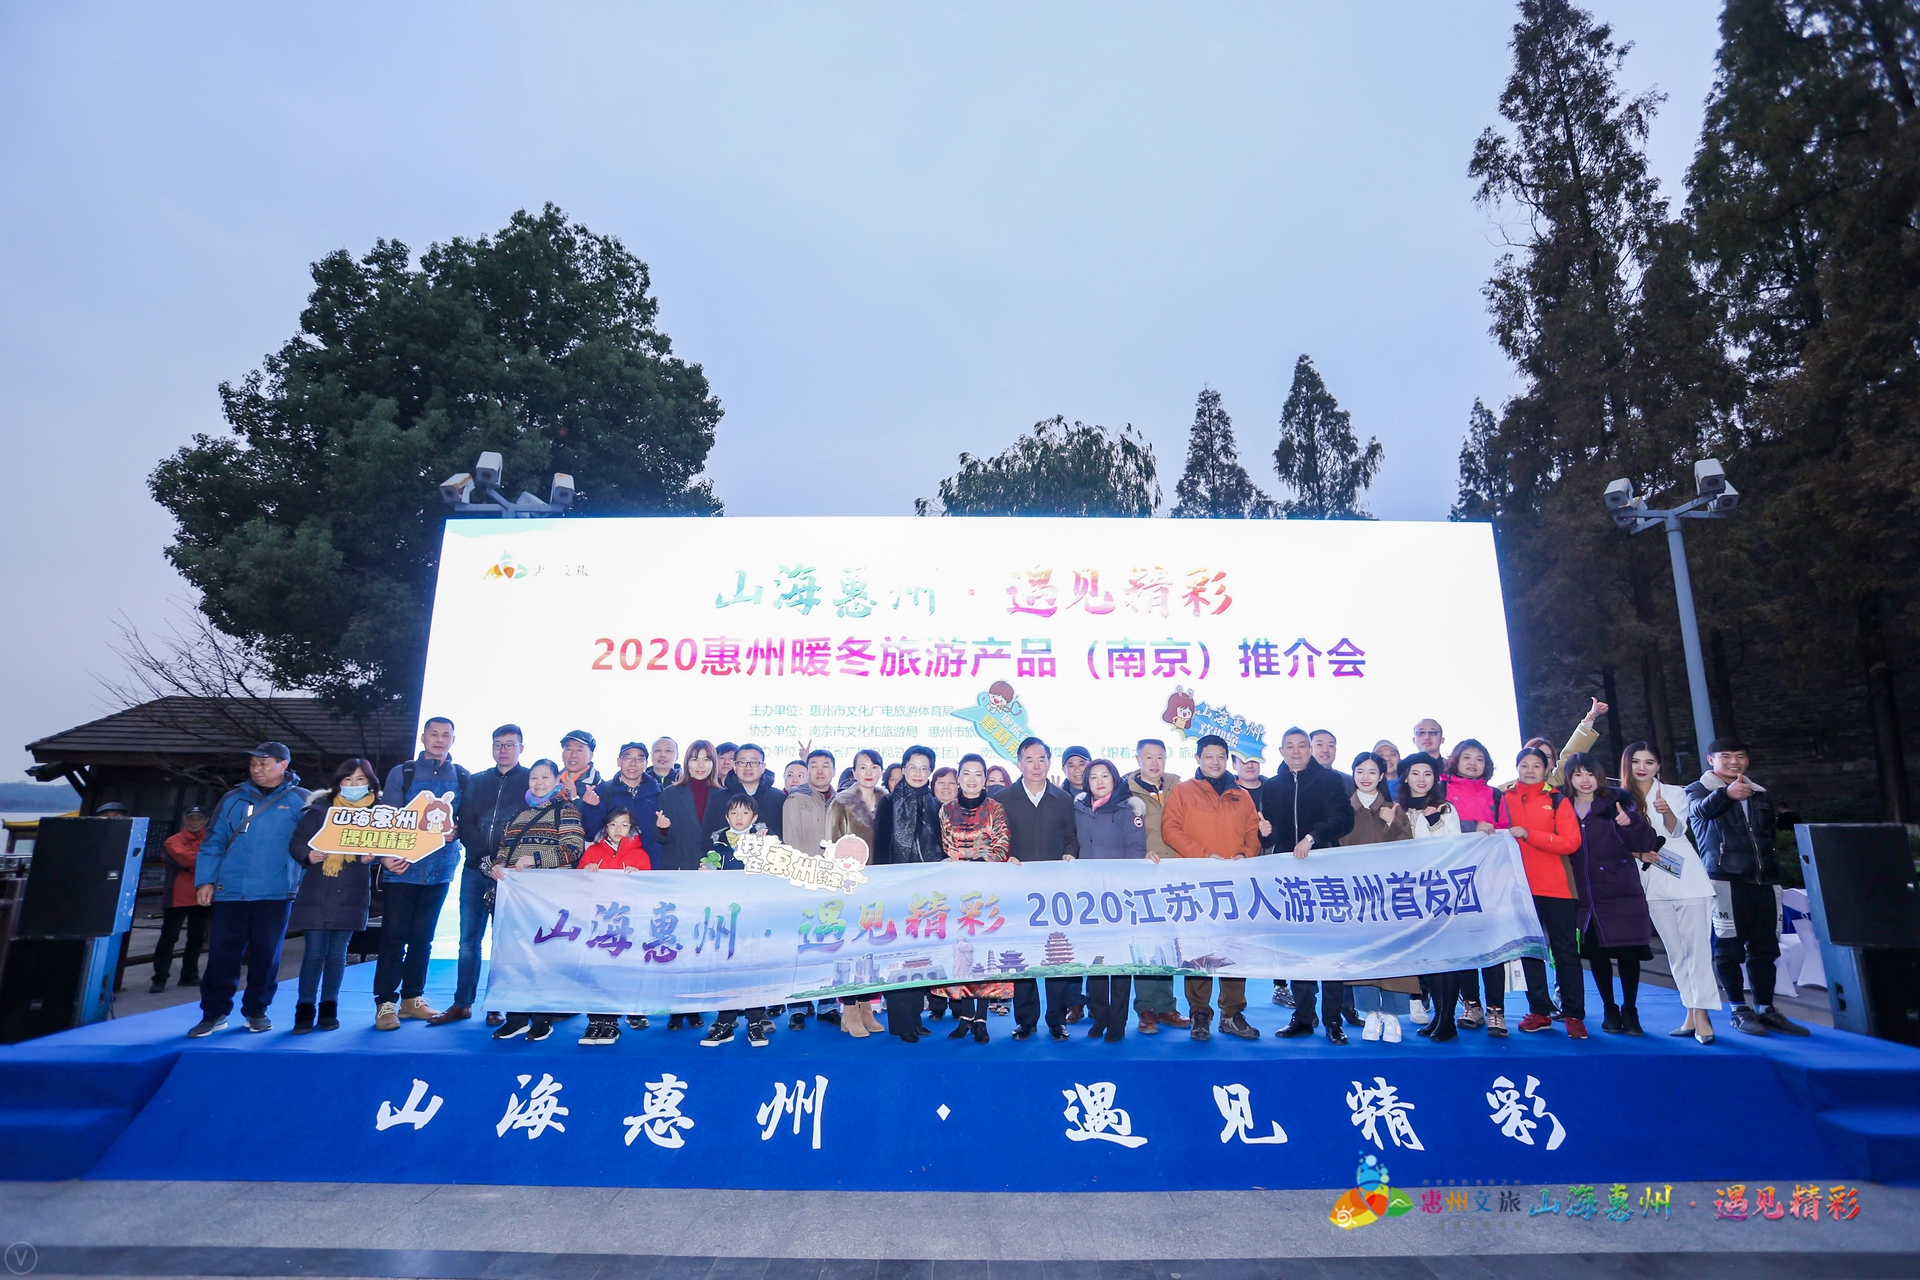 2020最温暖的打开方式：邀您来惠州共赴一场“暖冬之旅” 